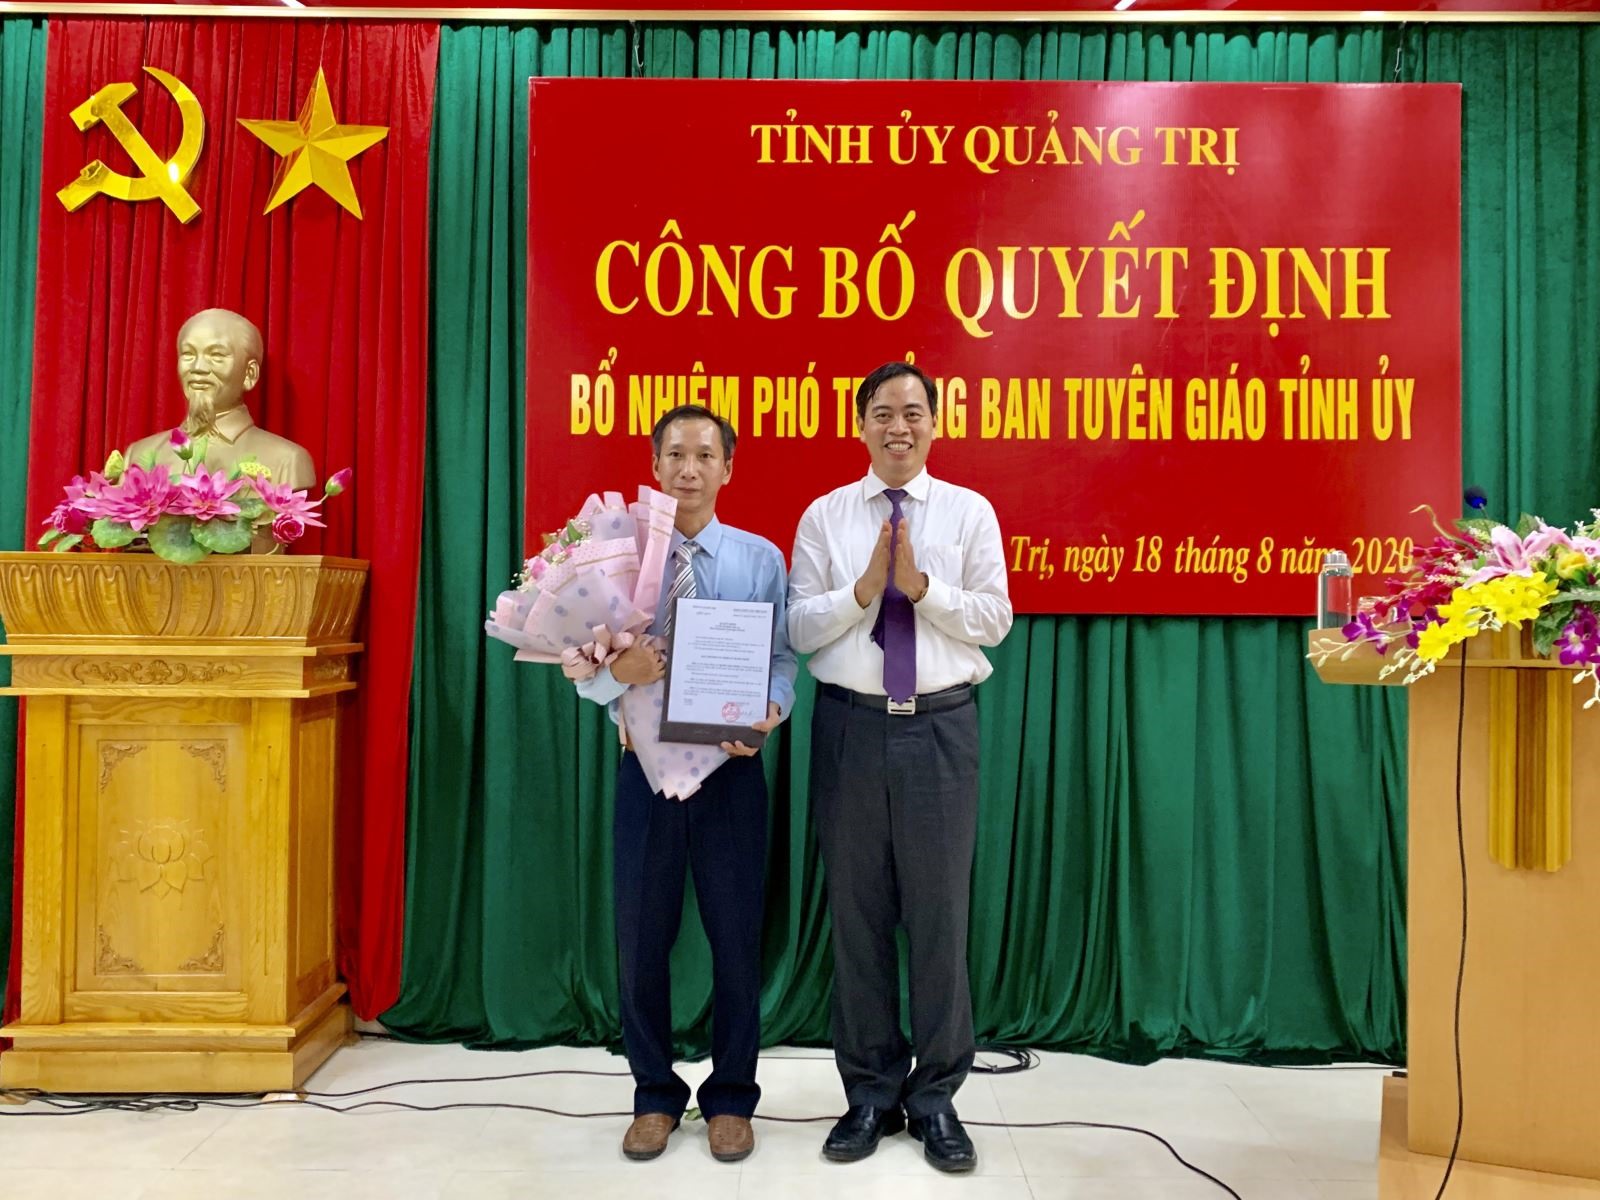 Phó Bí thư Thường trực Tỉnh uỷ Nguyễn Đăng Quang trao quyết định Phó trưởng Ban Tuyên giáo Tỉnh uỷ cho đồng chí Nguyễn Quốc Khánh